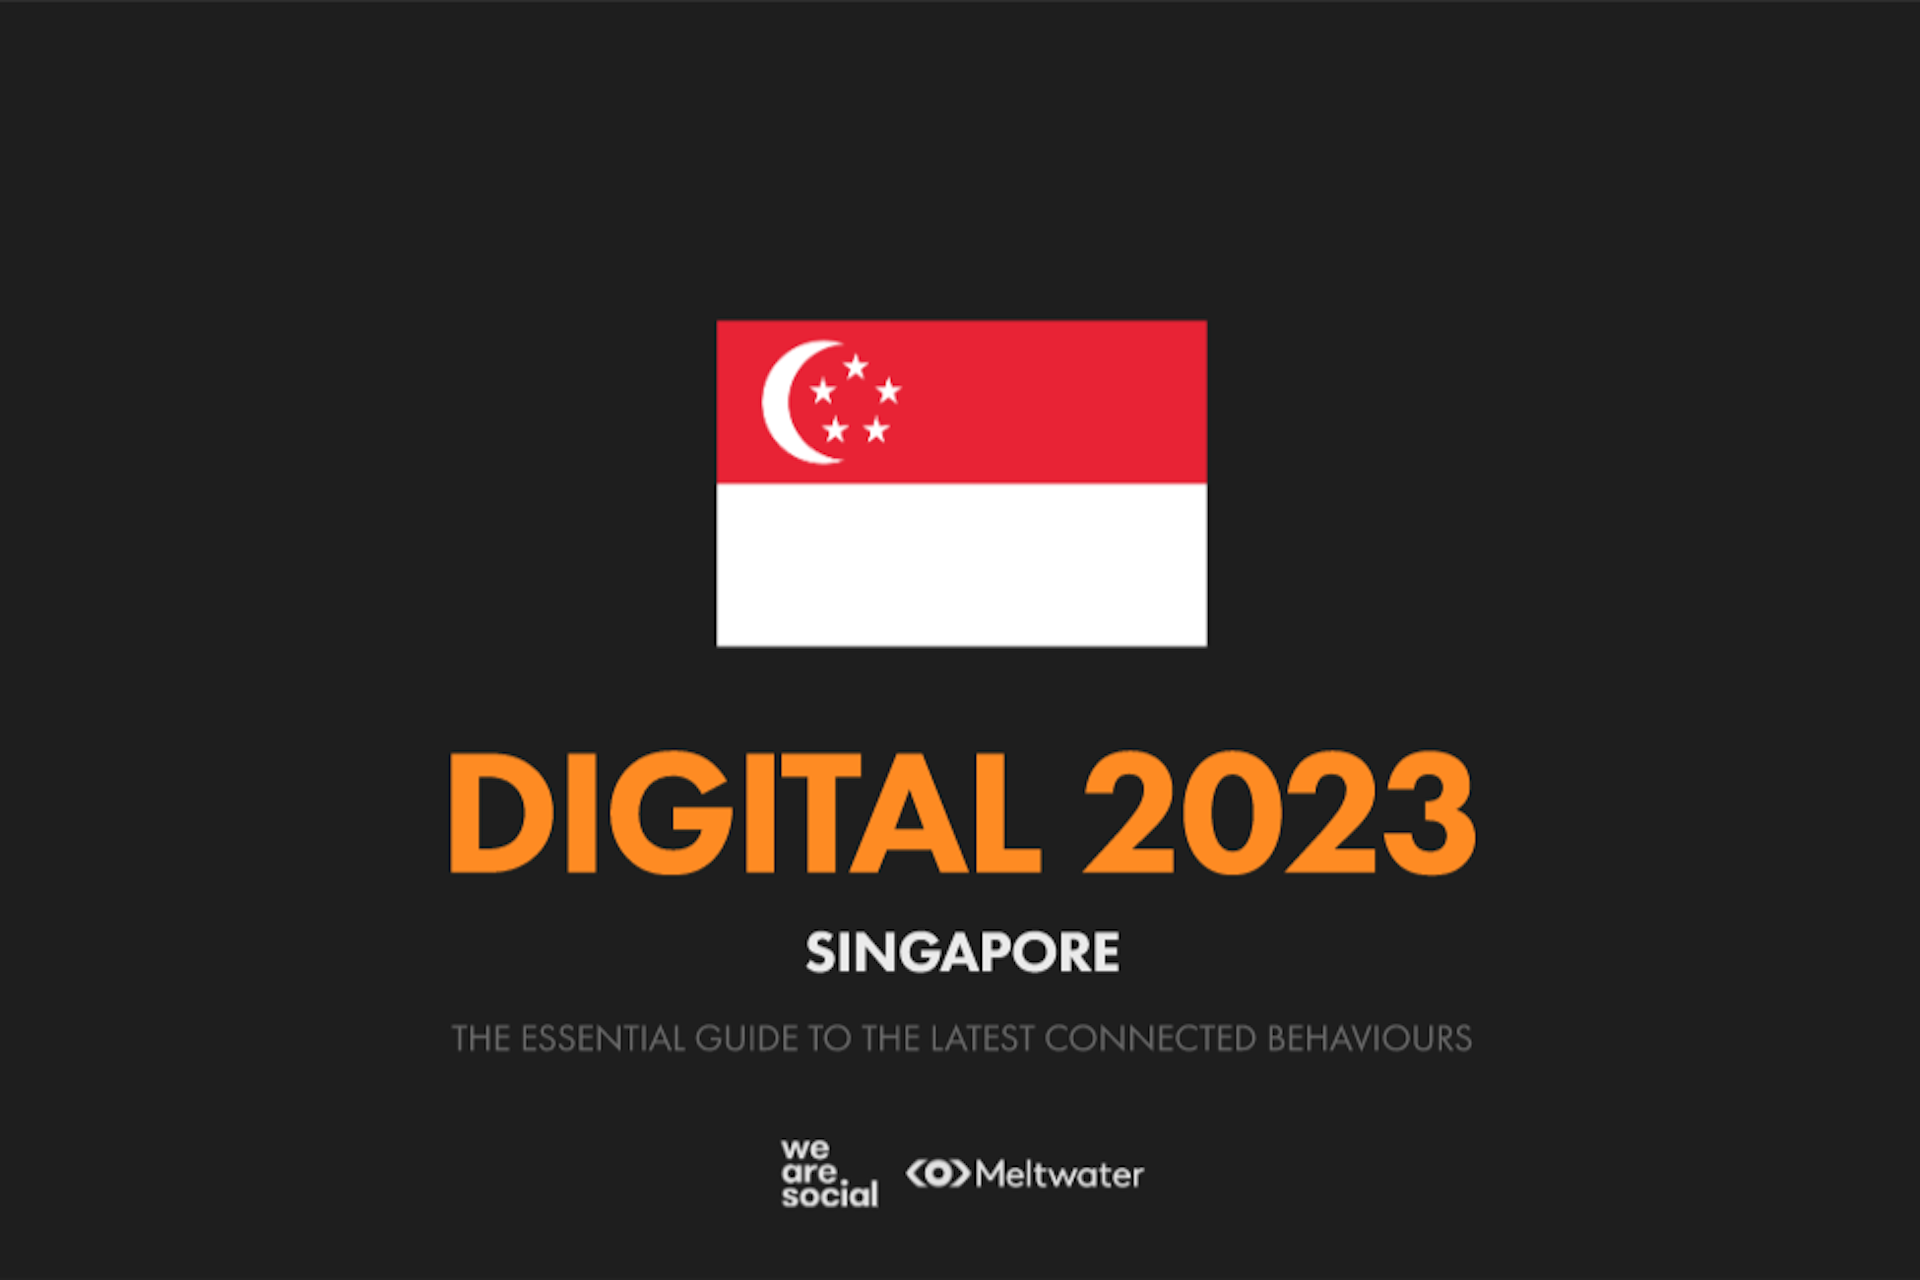 Global Digital Report 2023 for Singapore